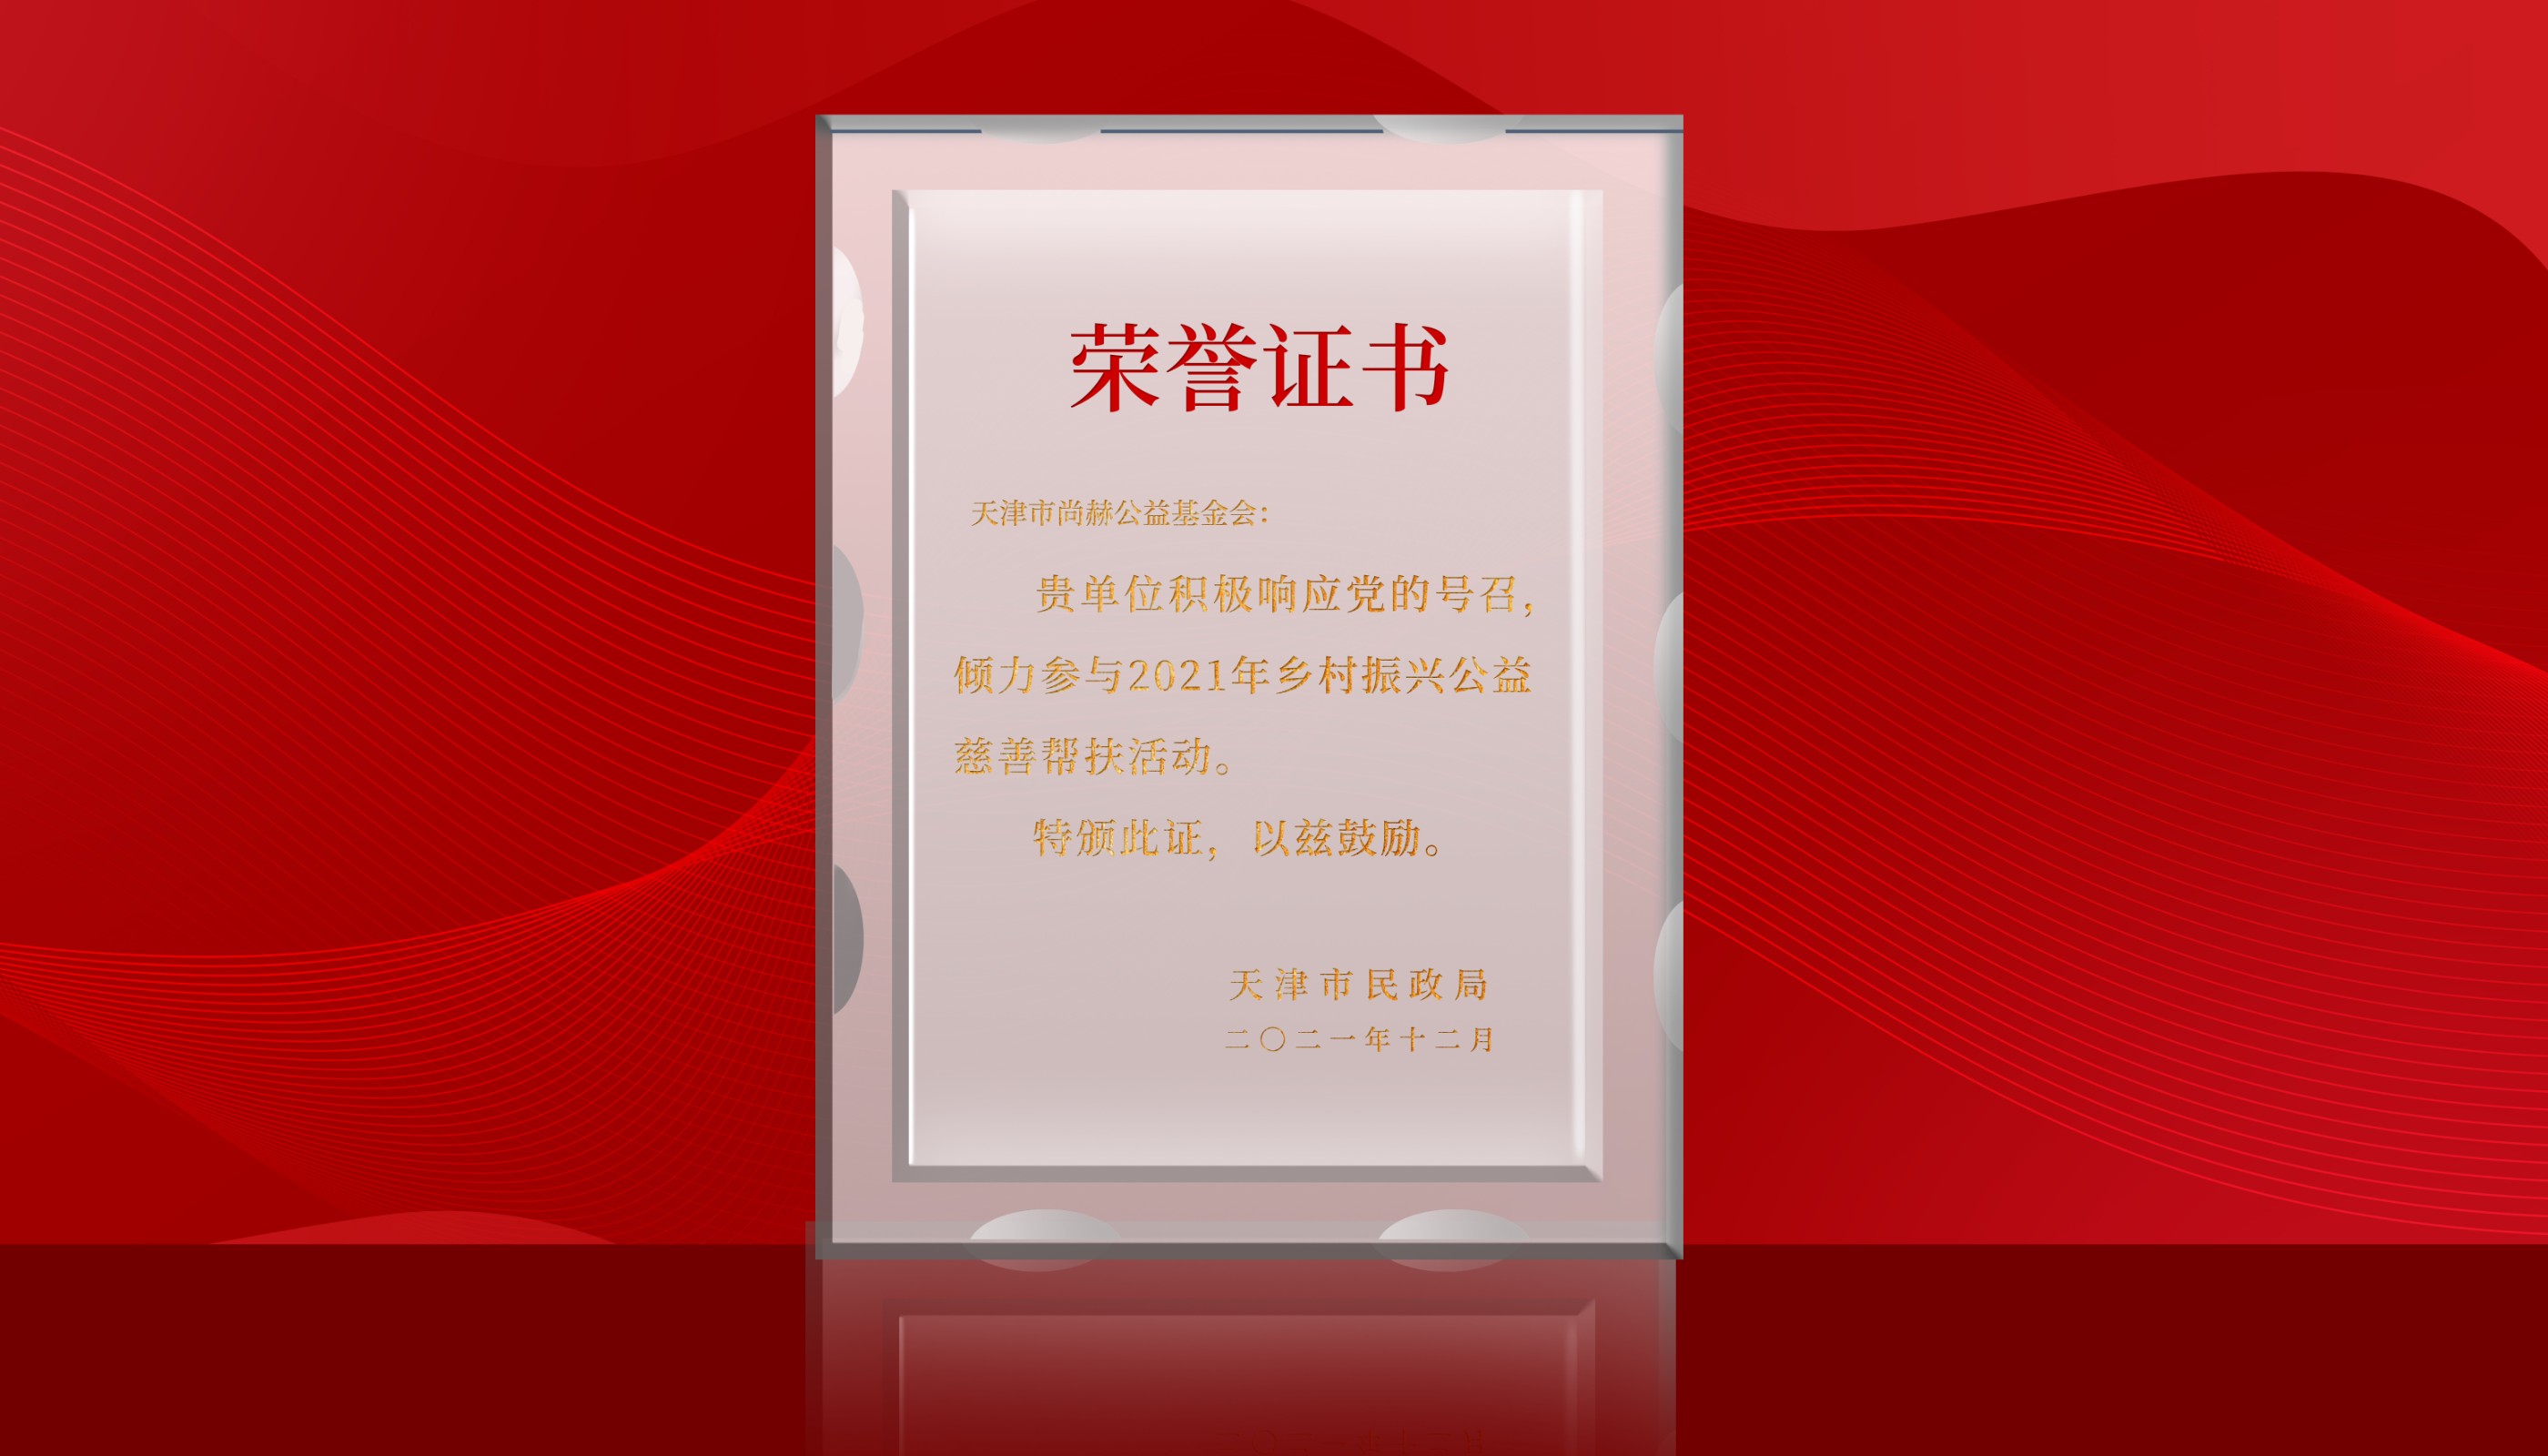 7月-正规的十大网投实体平台(中国)有限公司公益基金会荣获天津市民政局颁发的荣誉证书